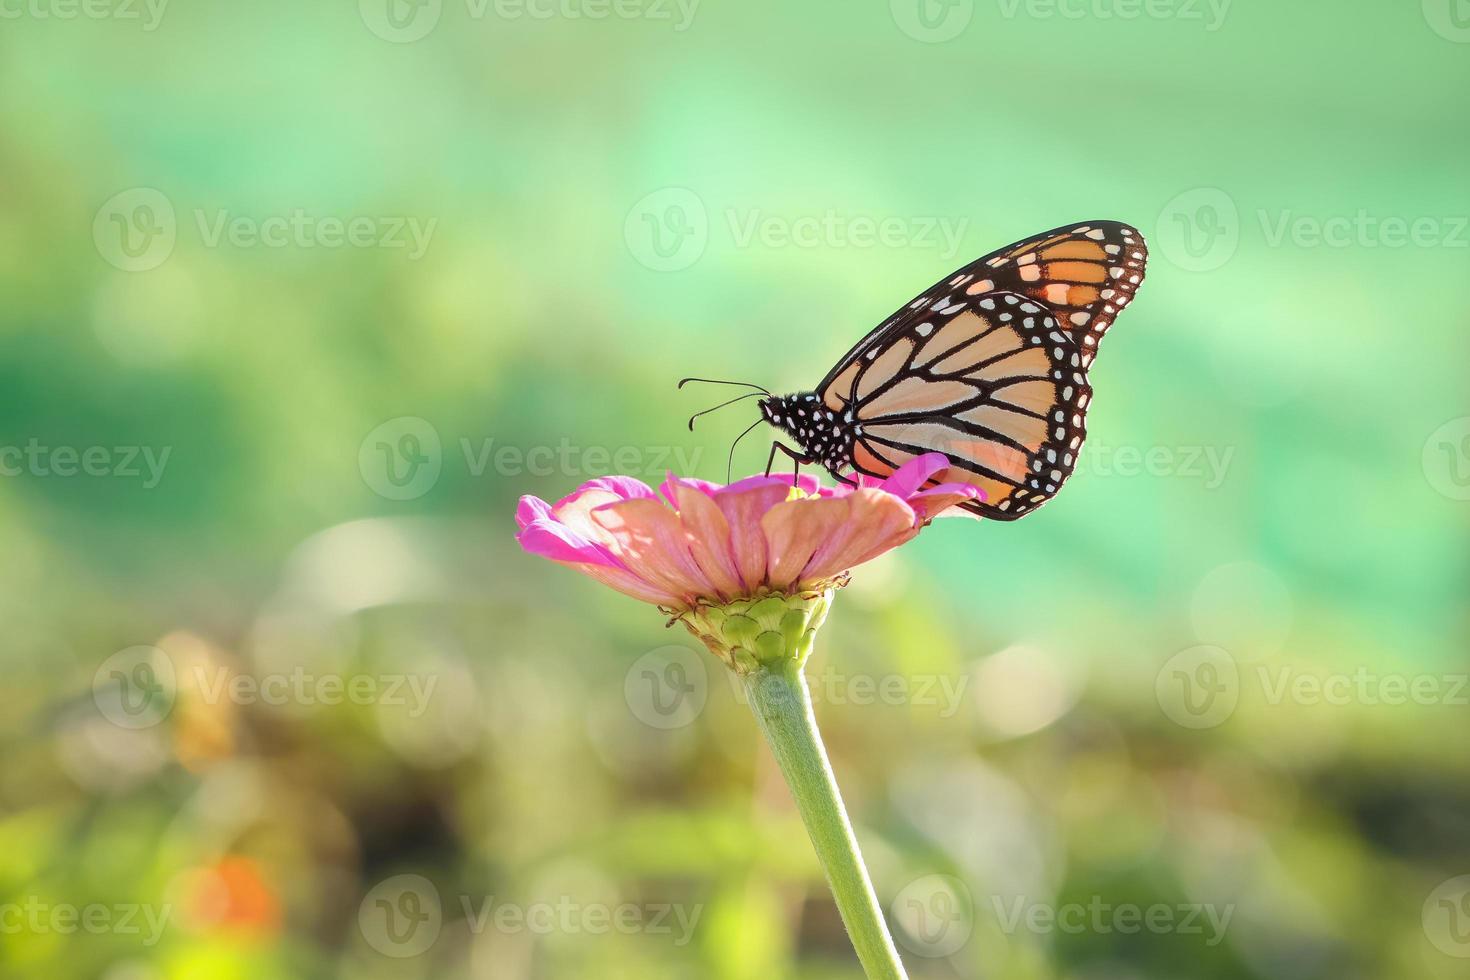 mariposa monarca en una flor de margarita gerber recogiendo polen. foto